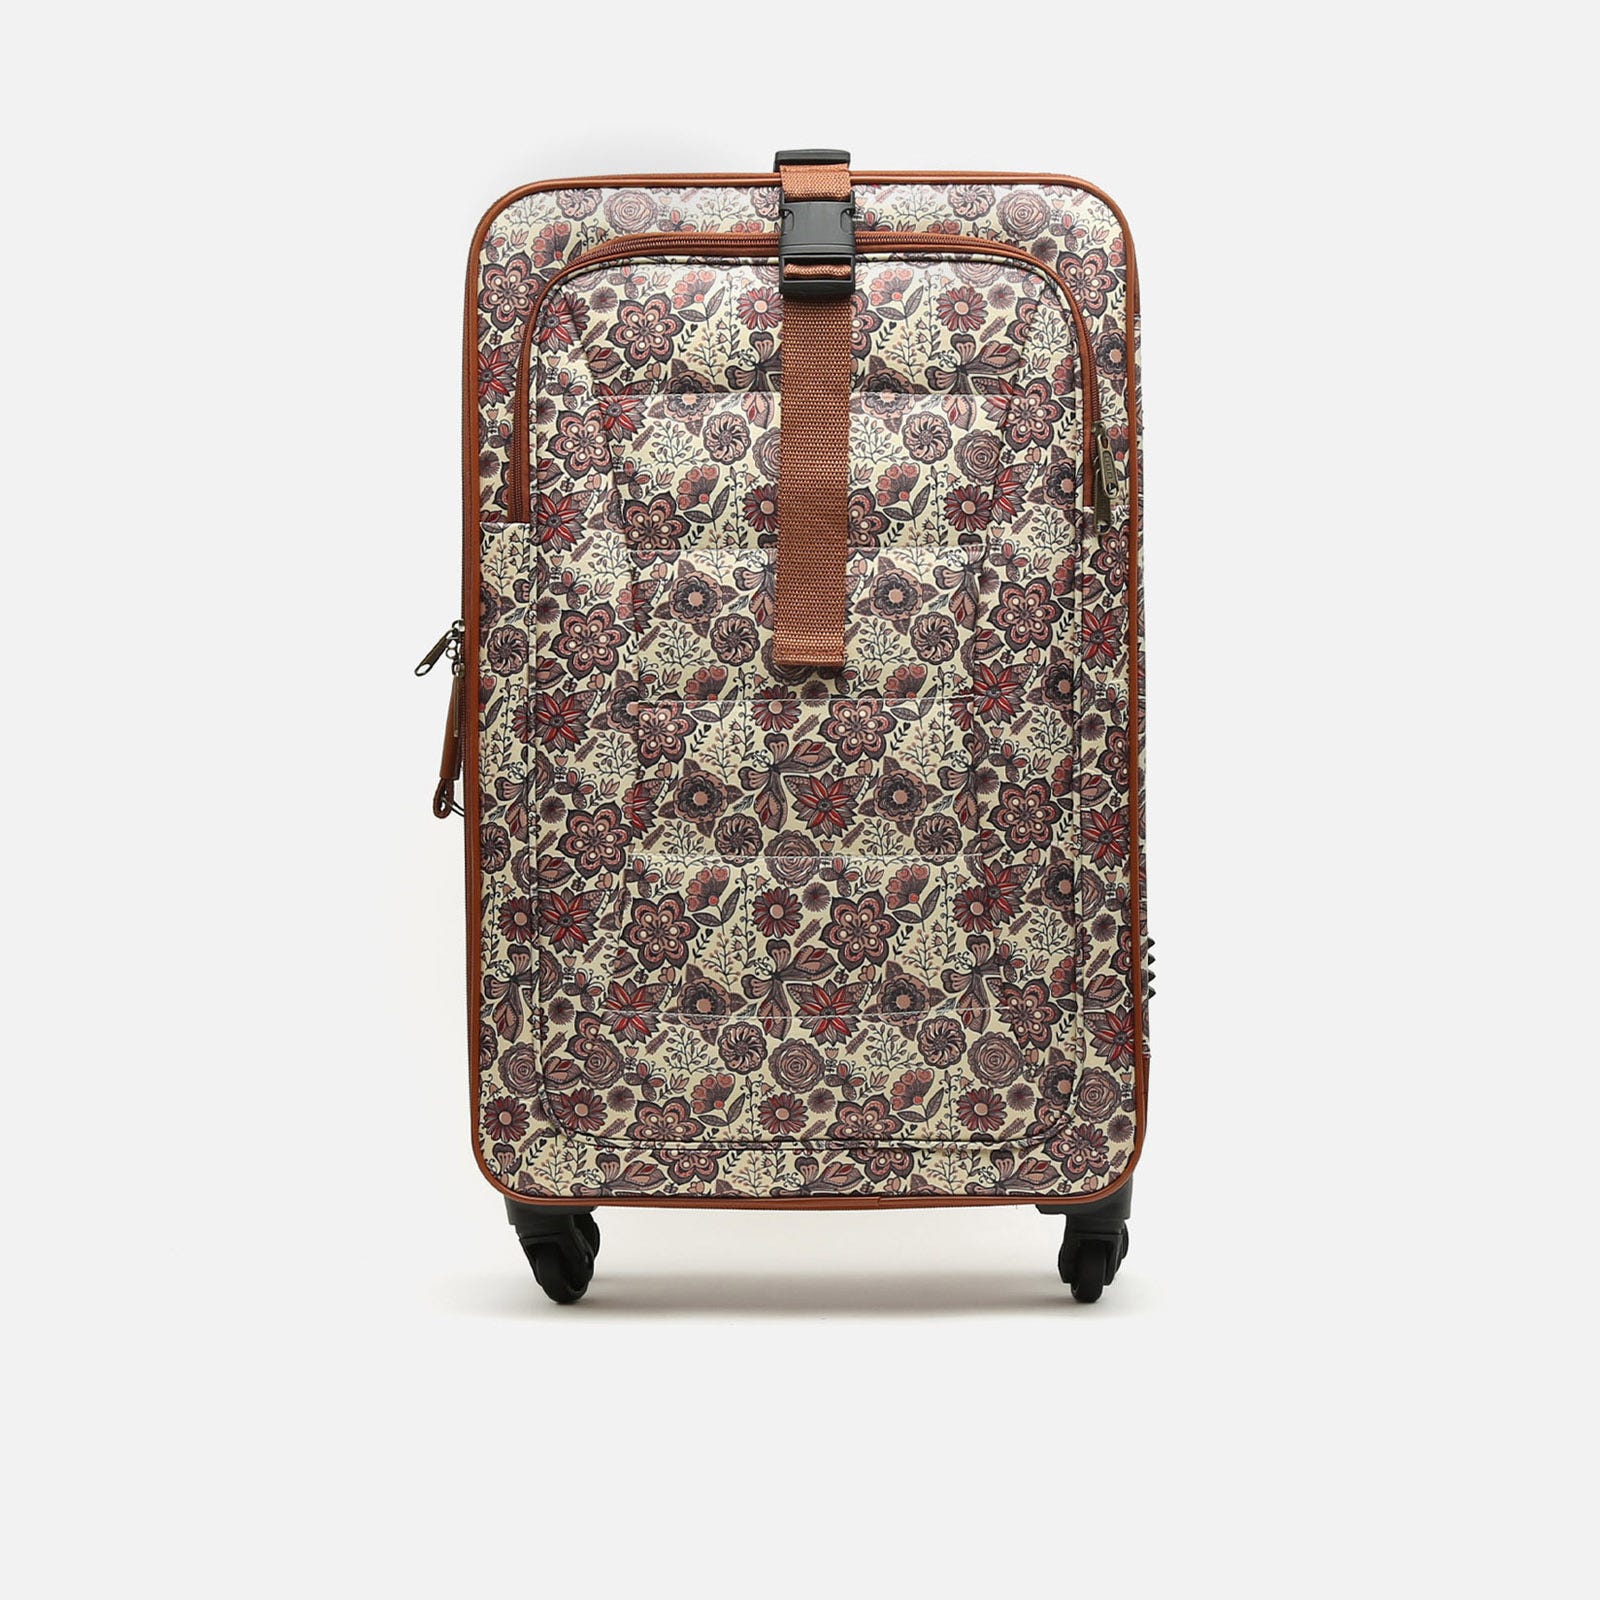 Binilus medium suitcase